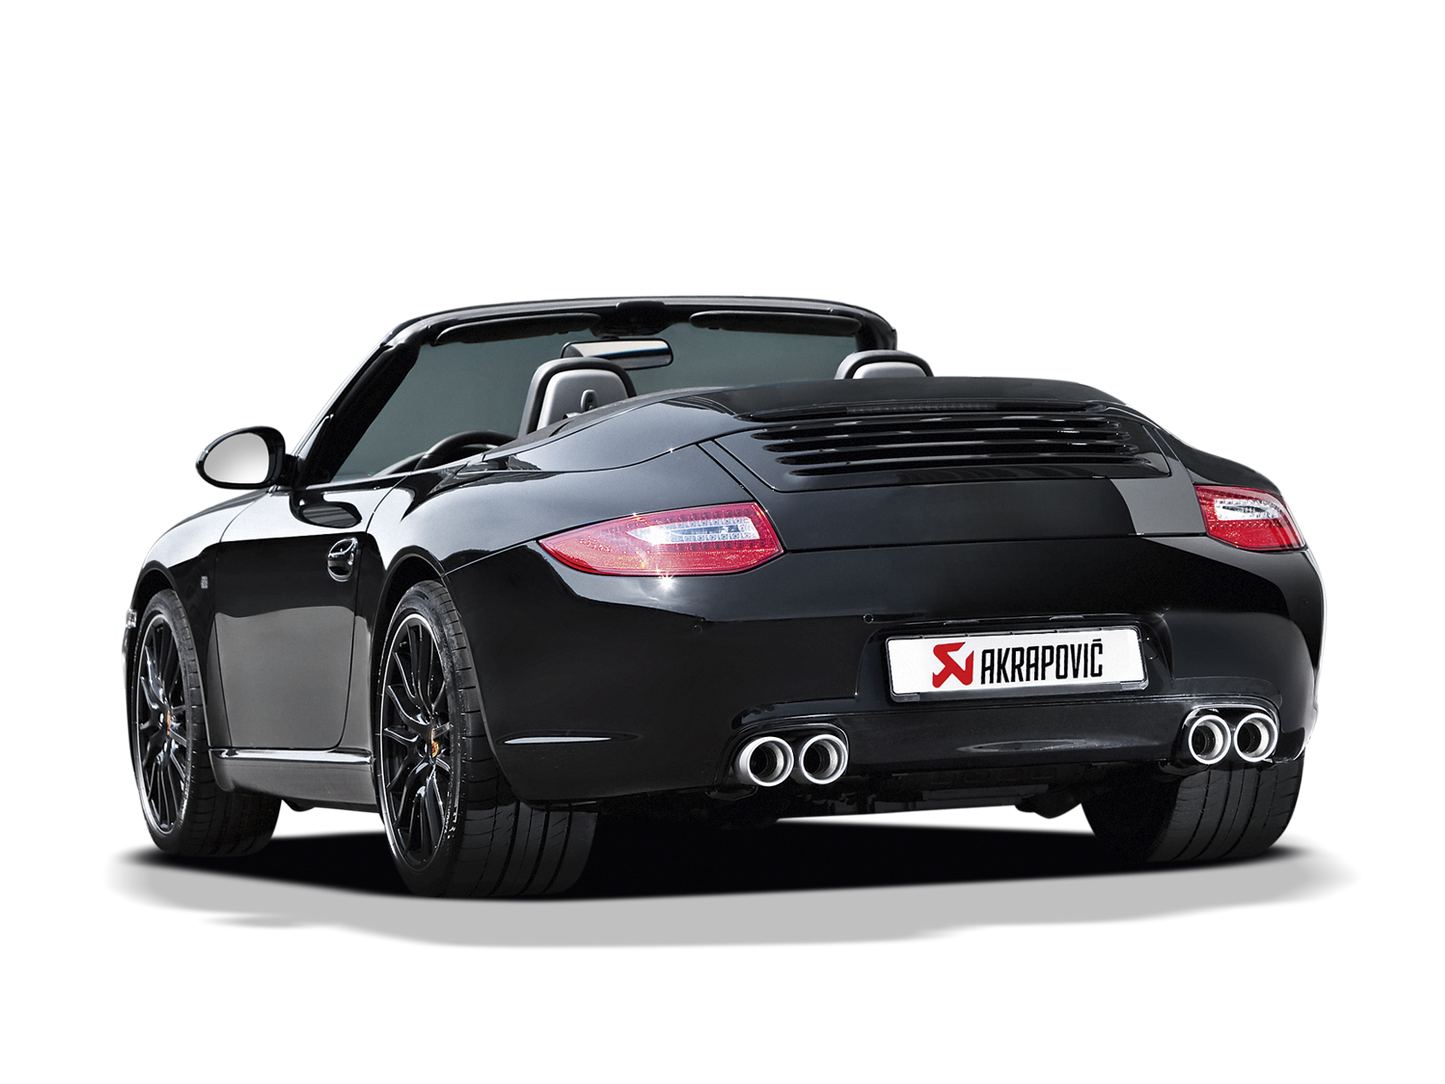 Akrapovič Slip-On Race Line (Titanium) for Porsche 911 Targa 4/4S (997) 2008-2012